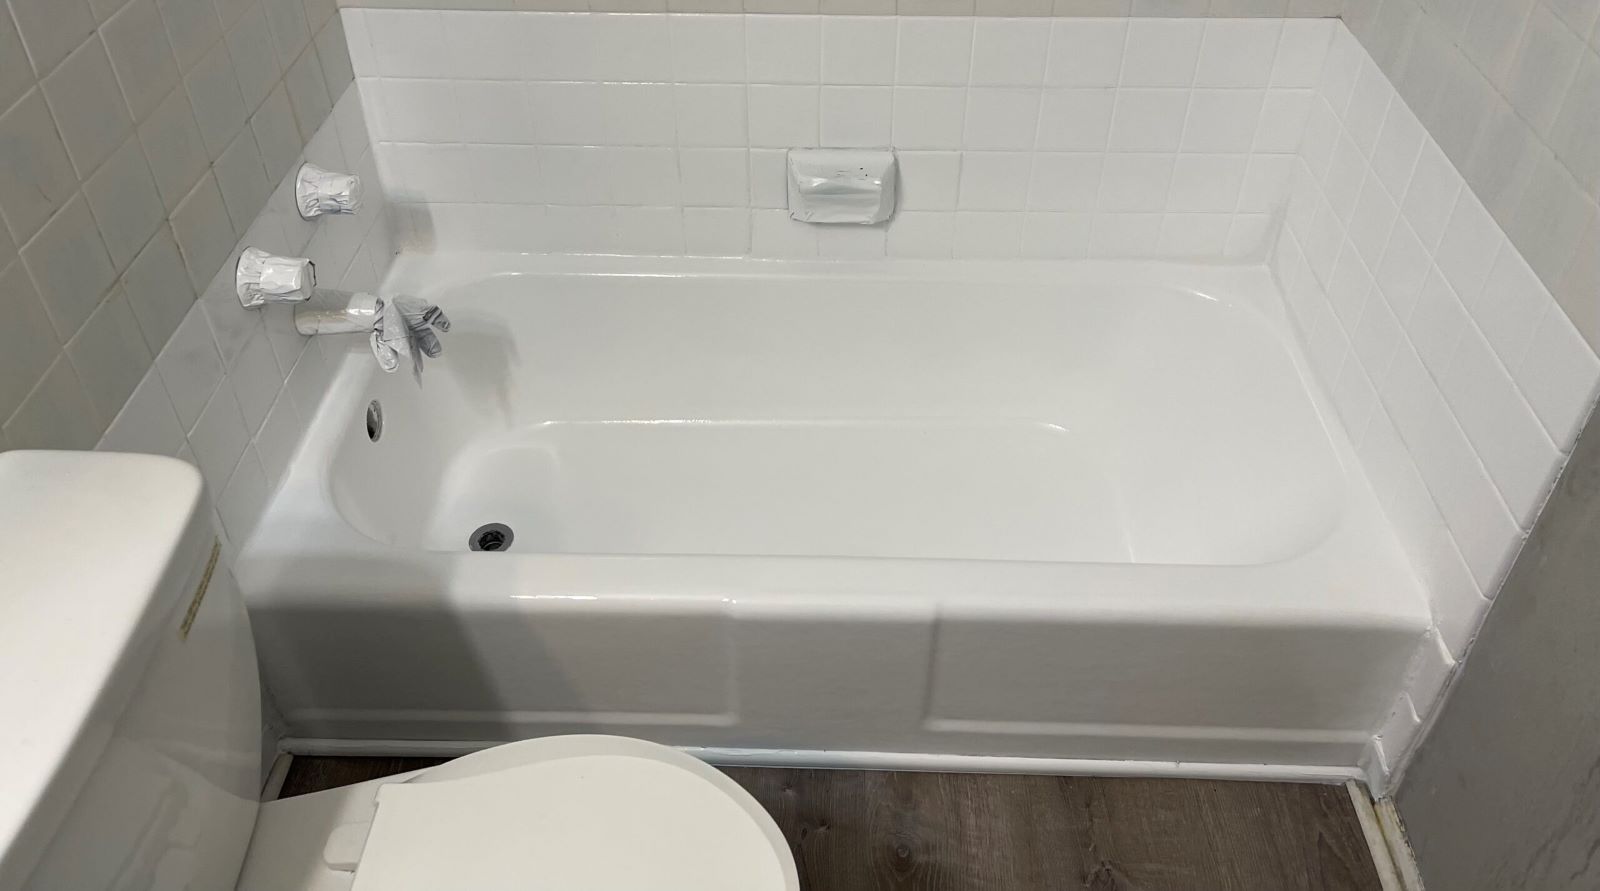 Affordable Bathtub Resurfacing Crestwood, MO | Bathtub Refinishing in Crestwood, MO | A New Look Resurfacing